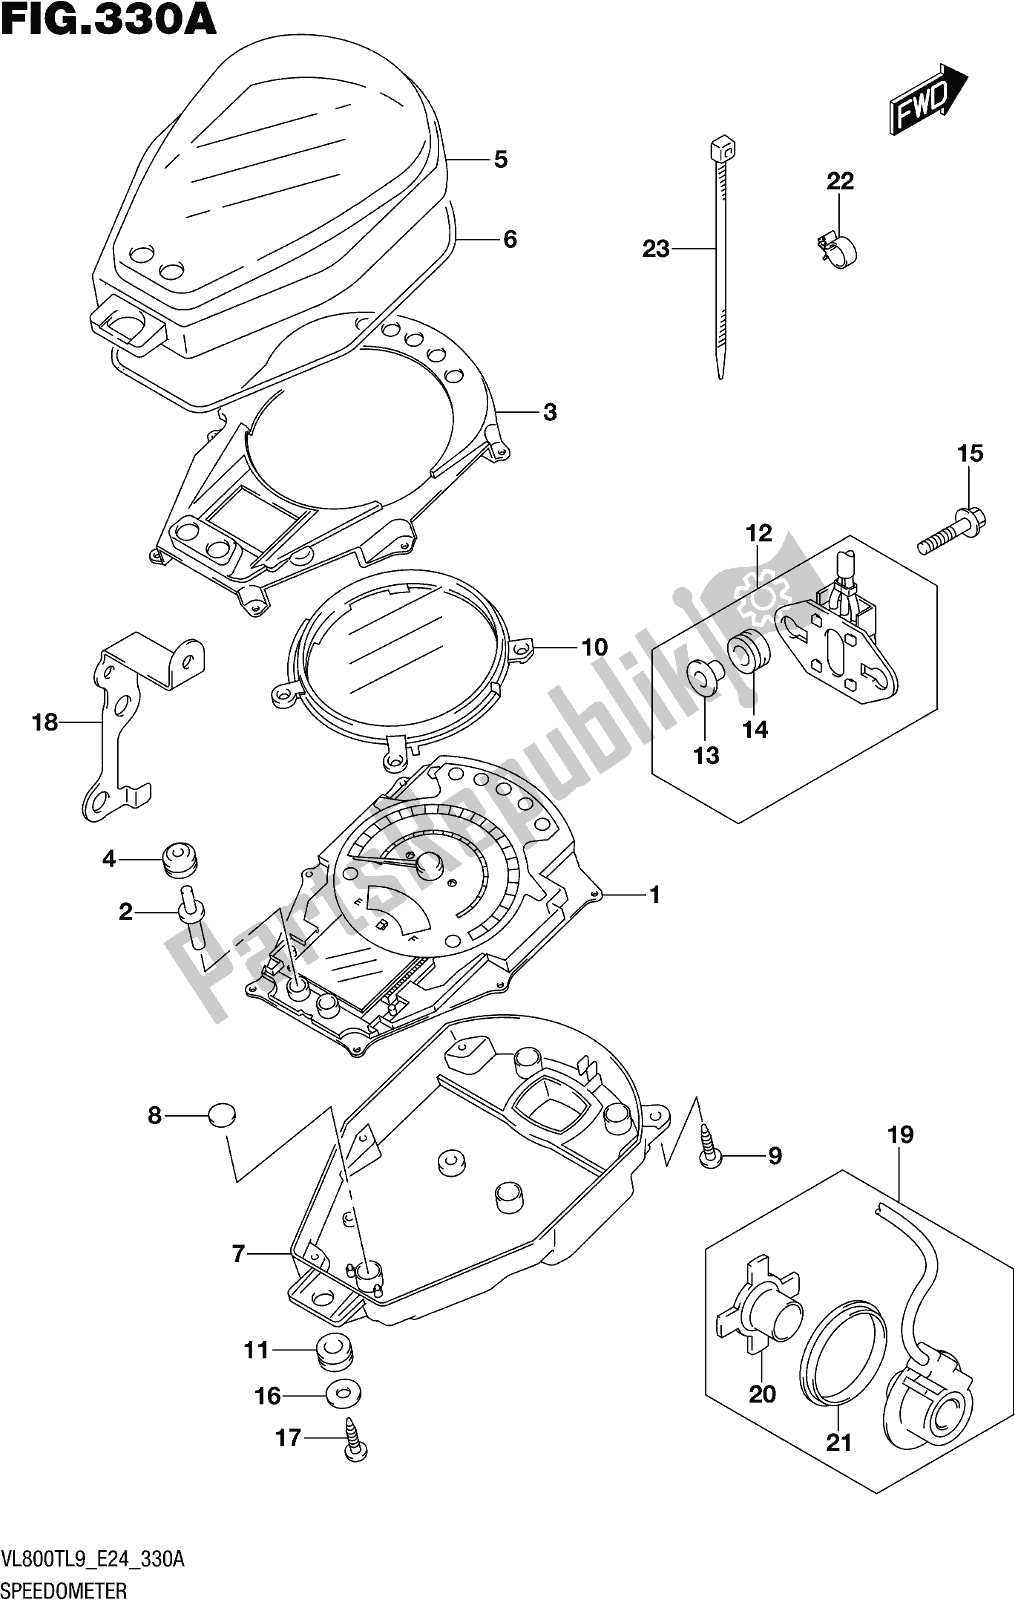 Tutte le parti per il Fig. 330a Speedometer del Suzuki VL 800T 2019